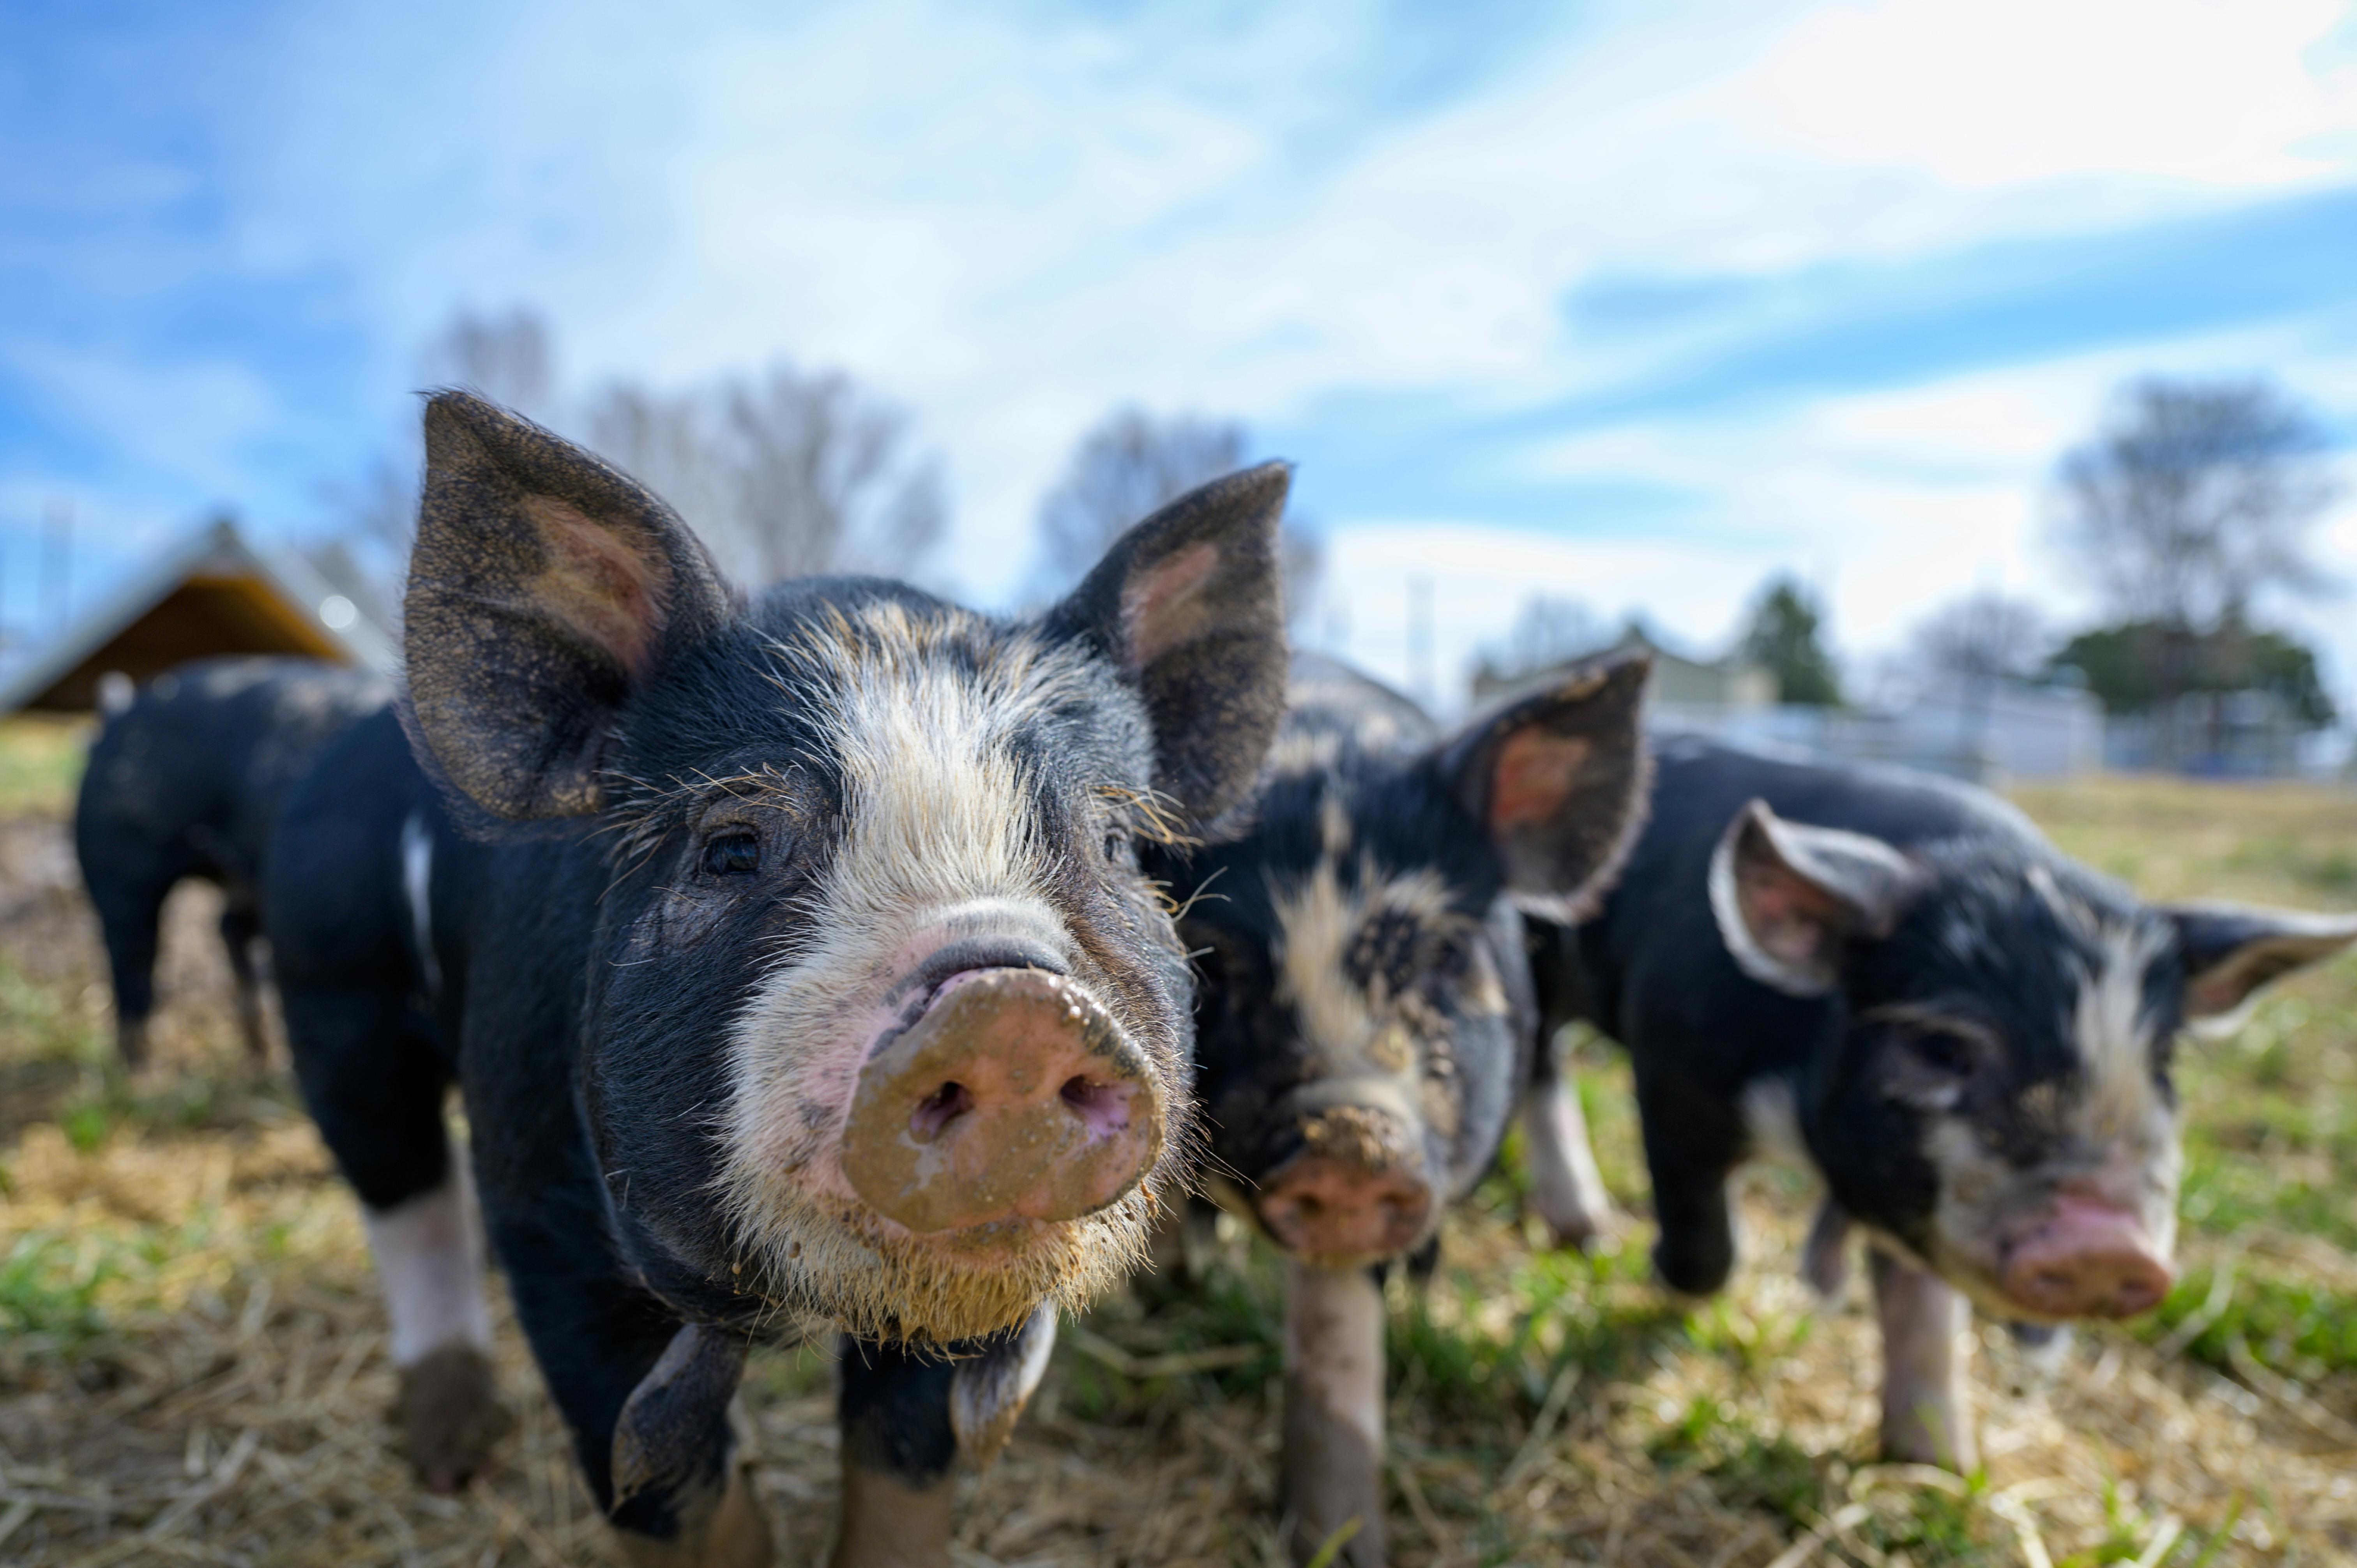 dirty piglets walking in field in daytime